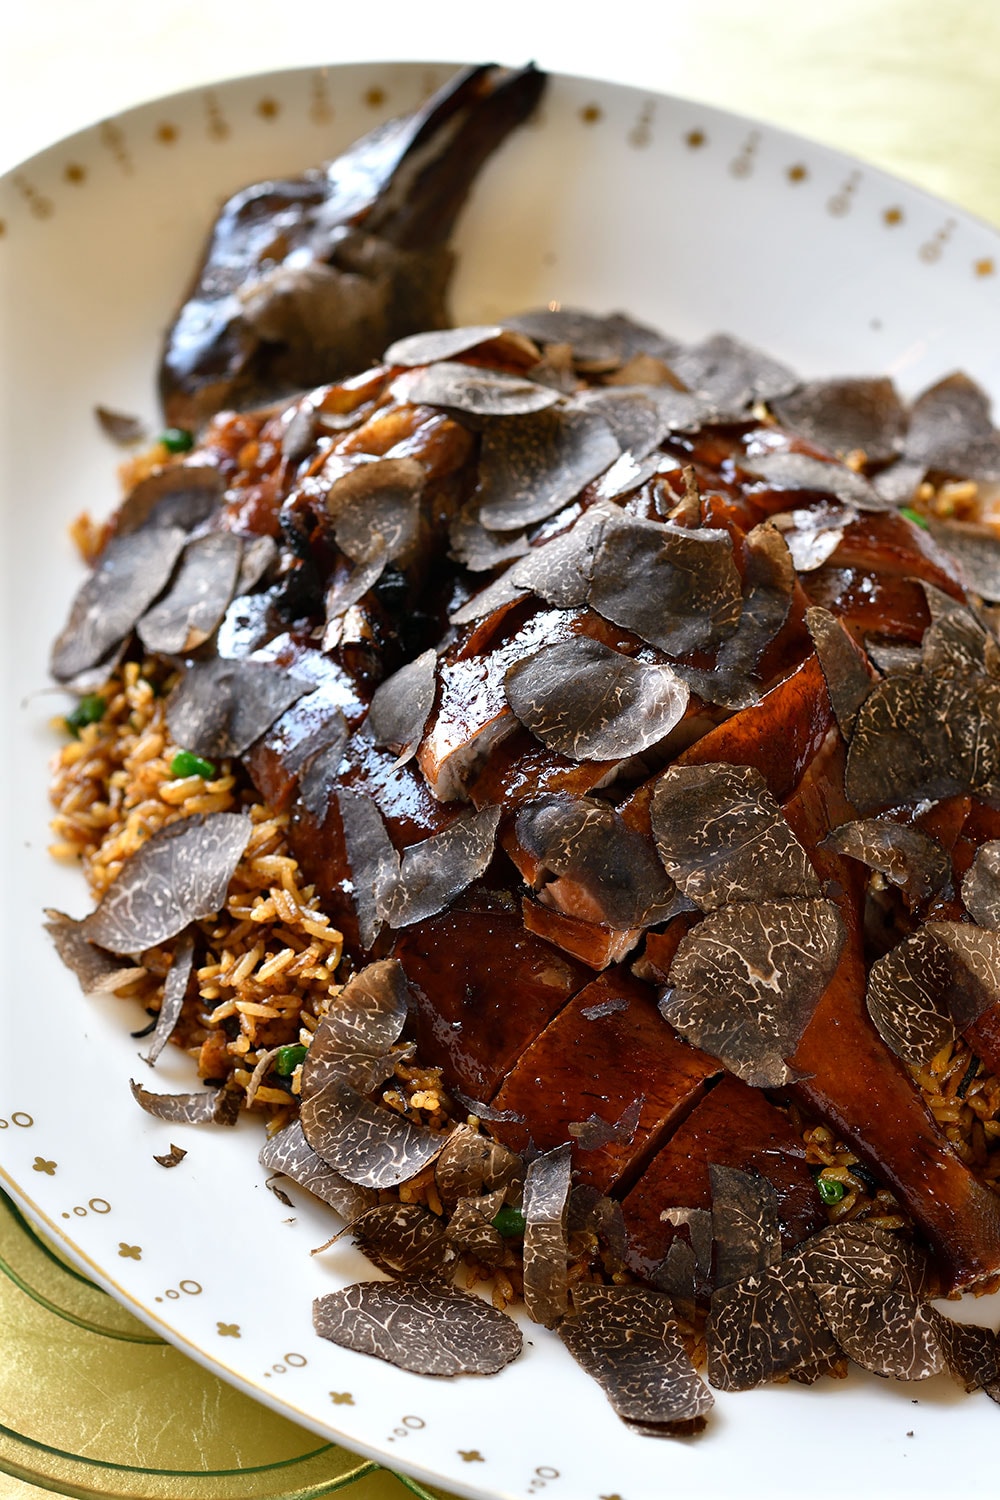 ライチの木で焼き上げる肉類はタムさん自慢の一品。ローストしたガチョウと黒トリュフをたっぷりのせた野菜の炒飯。